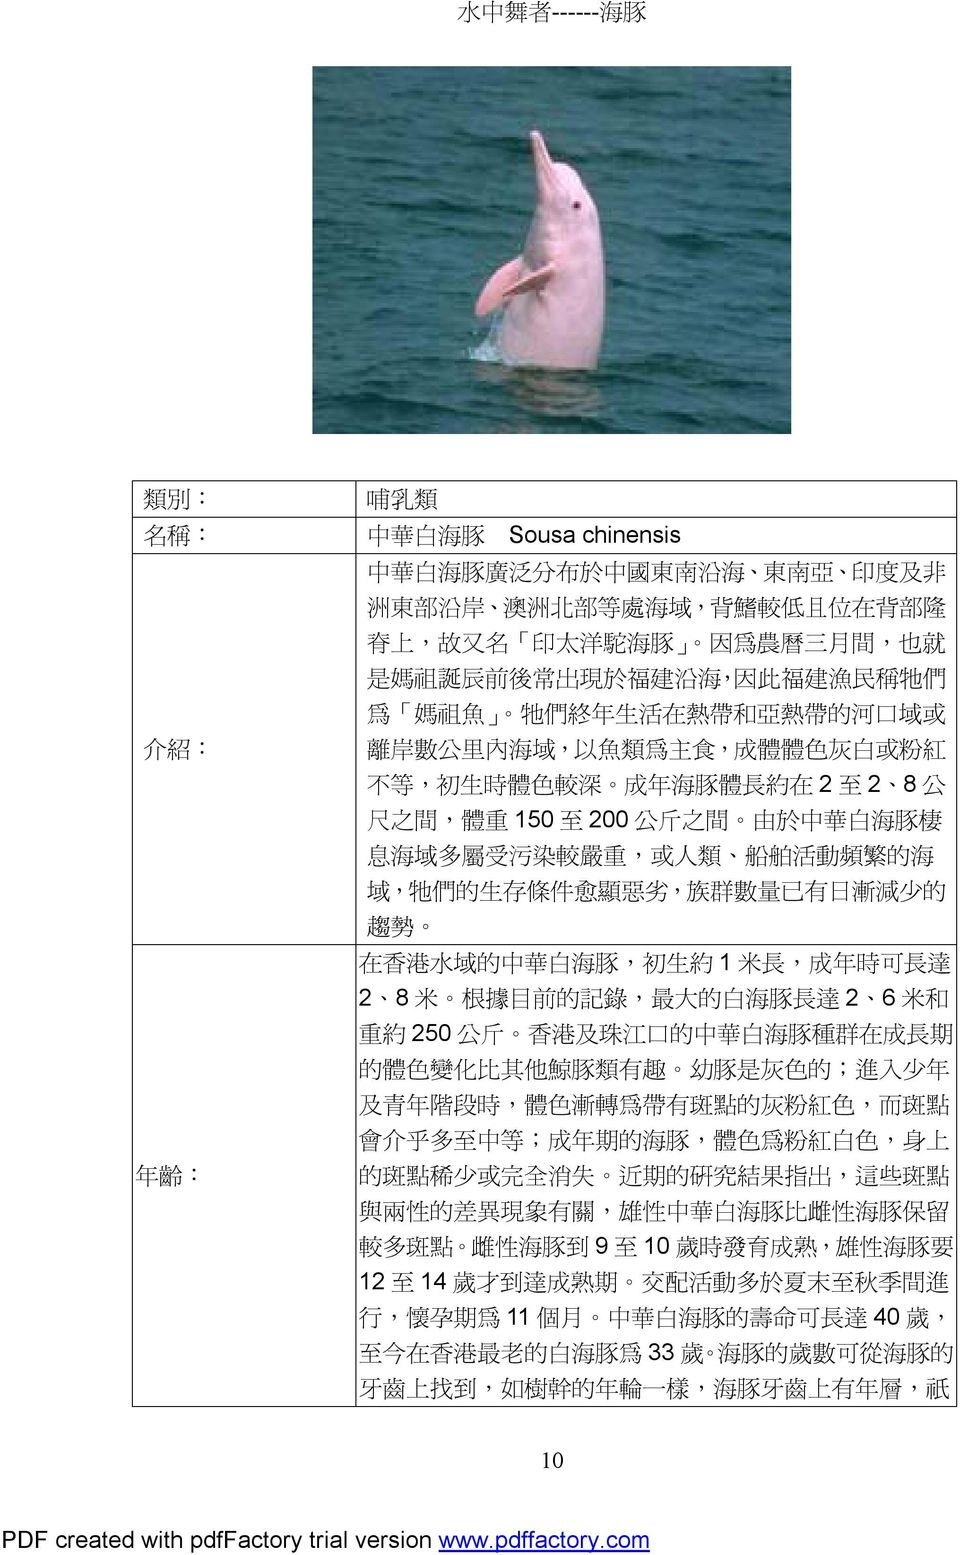 公 斤 之 間 由 於 中 華 白 海 豚 棲 息 海 域 多 屬 受 污 染 較 嚴 重, 或 人 類 船 舶 活 動 頻 繁 的 海 域, 牠 們 的 生 存 條 件 愈 顯 惡 劣, 族 群 數 量 已 有 日 漸 減 少 的 趨 勢 在 香 港 水 域 的 中 華 白 海 豚, 初 生 約 1 米 長, 成 年 時 可 長 達 2 8 米 根 據 目 前 的 記 錄, 最 大 的 白 海